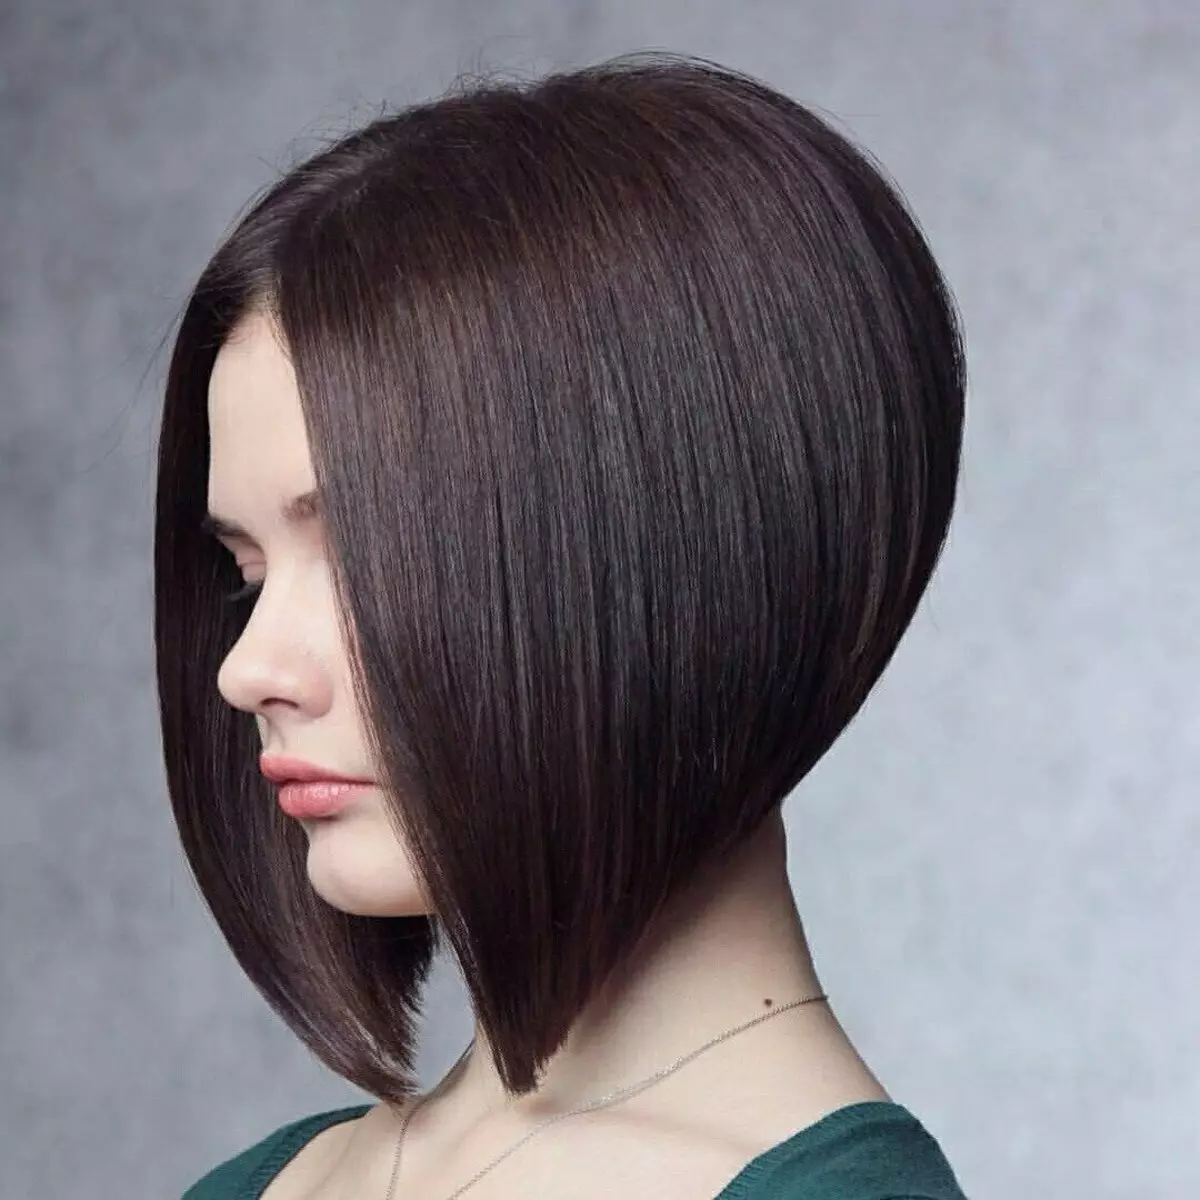 حلاقة الشعر على مستقيم الشعر (49 صورة): حلاقة شعر المرأة المألوف للشعر الثقيل والصعب المشاغب 2021 5780_15